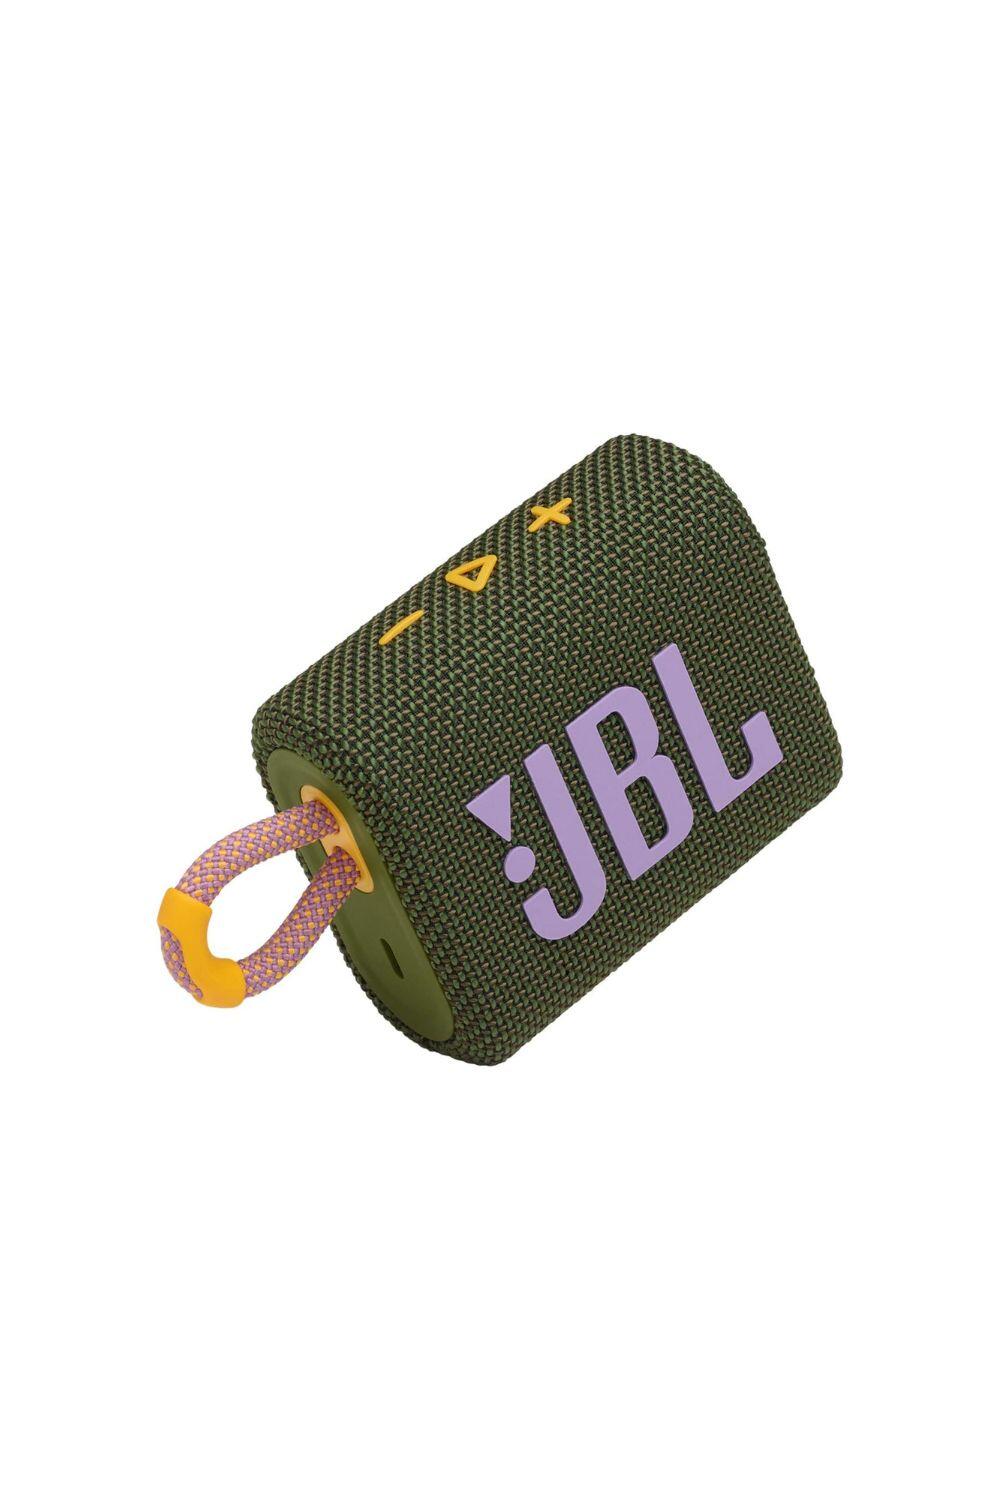 JBL GO 3 Waterproof/Dustproof Wireless Bluetooth Speaker 2/6